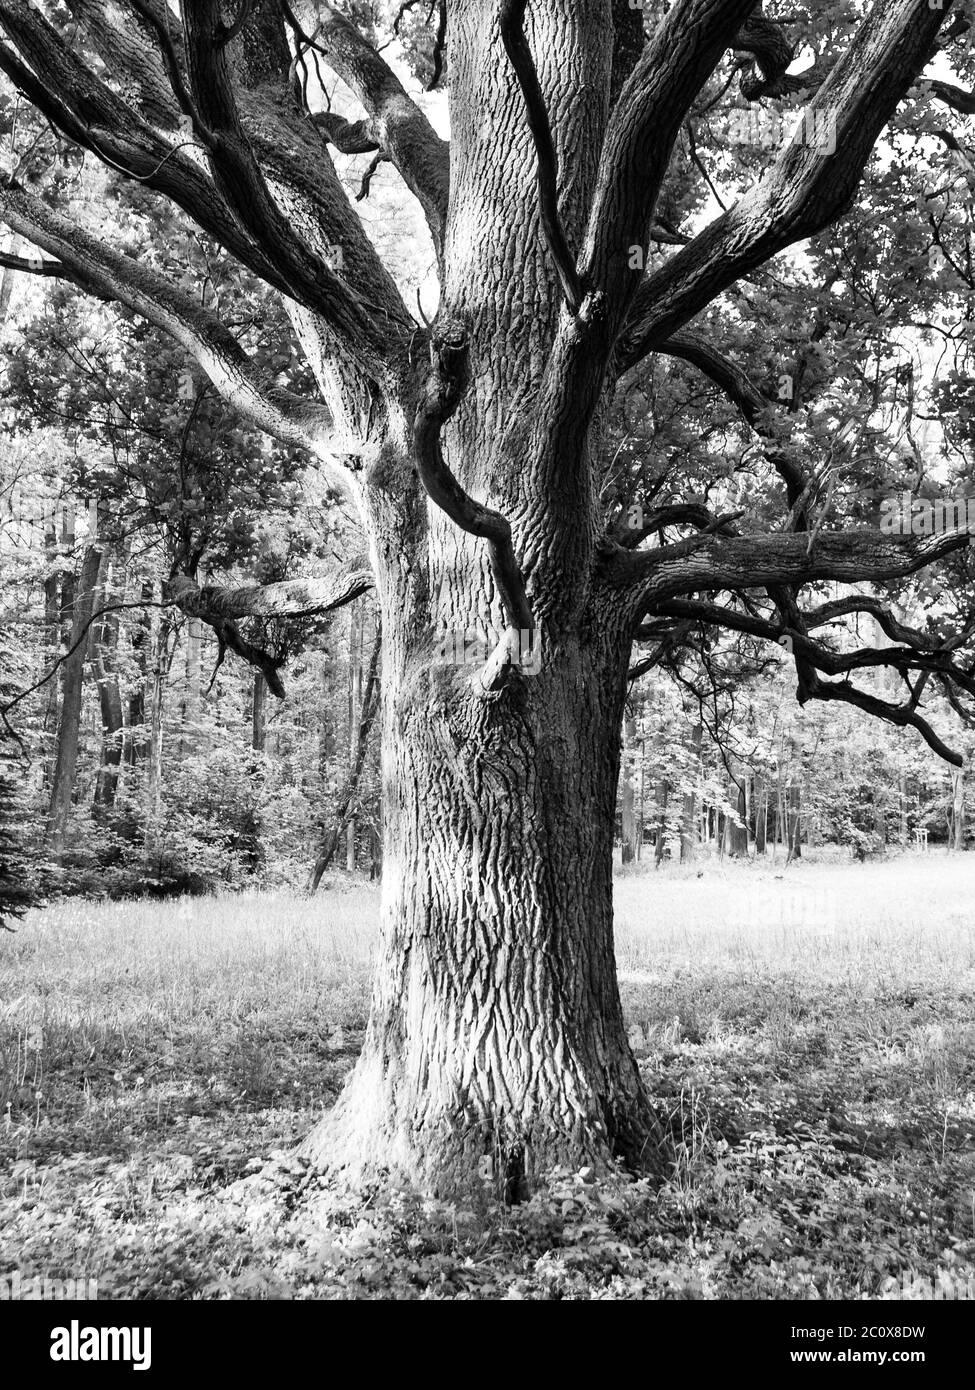 Quercia vecchia nel parco. Immagine in bianco e nero. Foto Stock